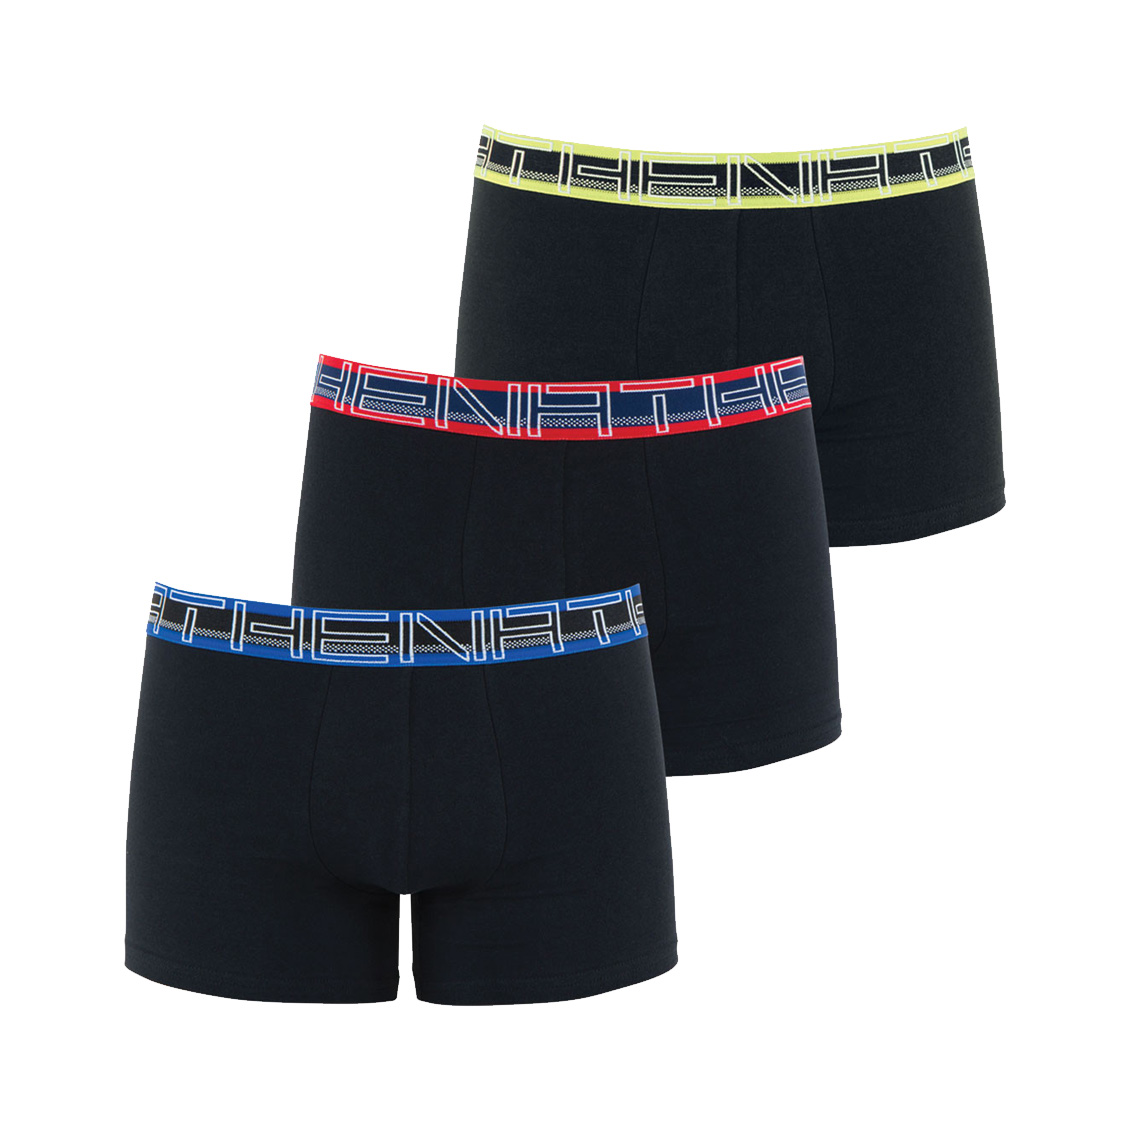 Lot de 3 boxers Athena en coton stretch respirant noir aux ceintures noires à détails verts, rouges 